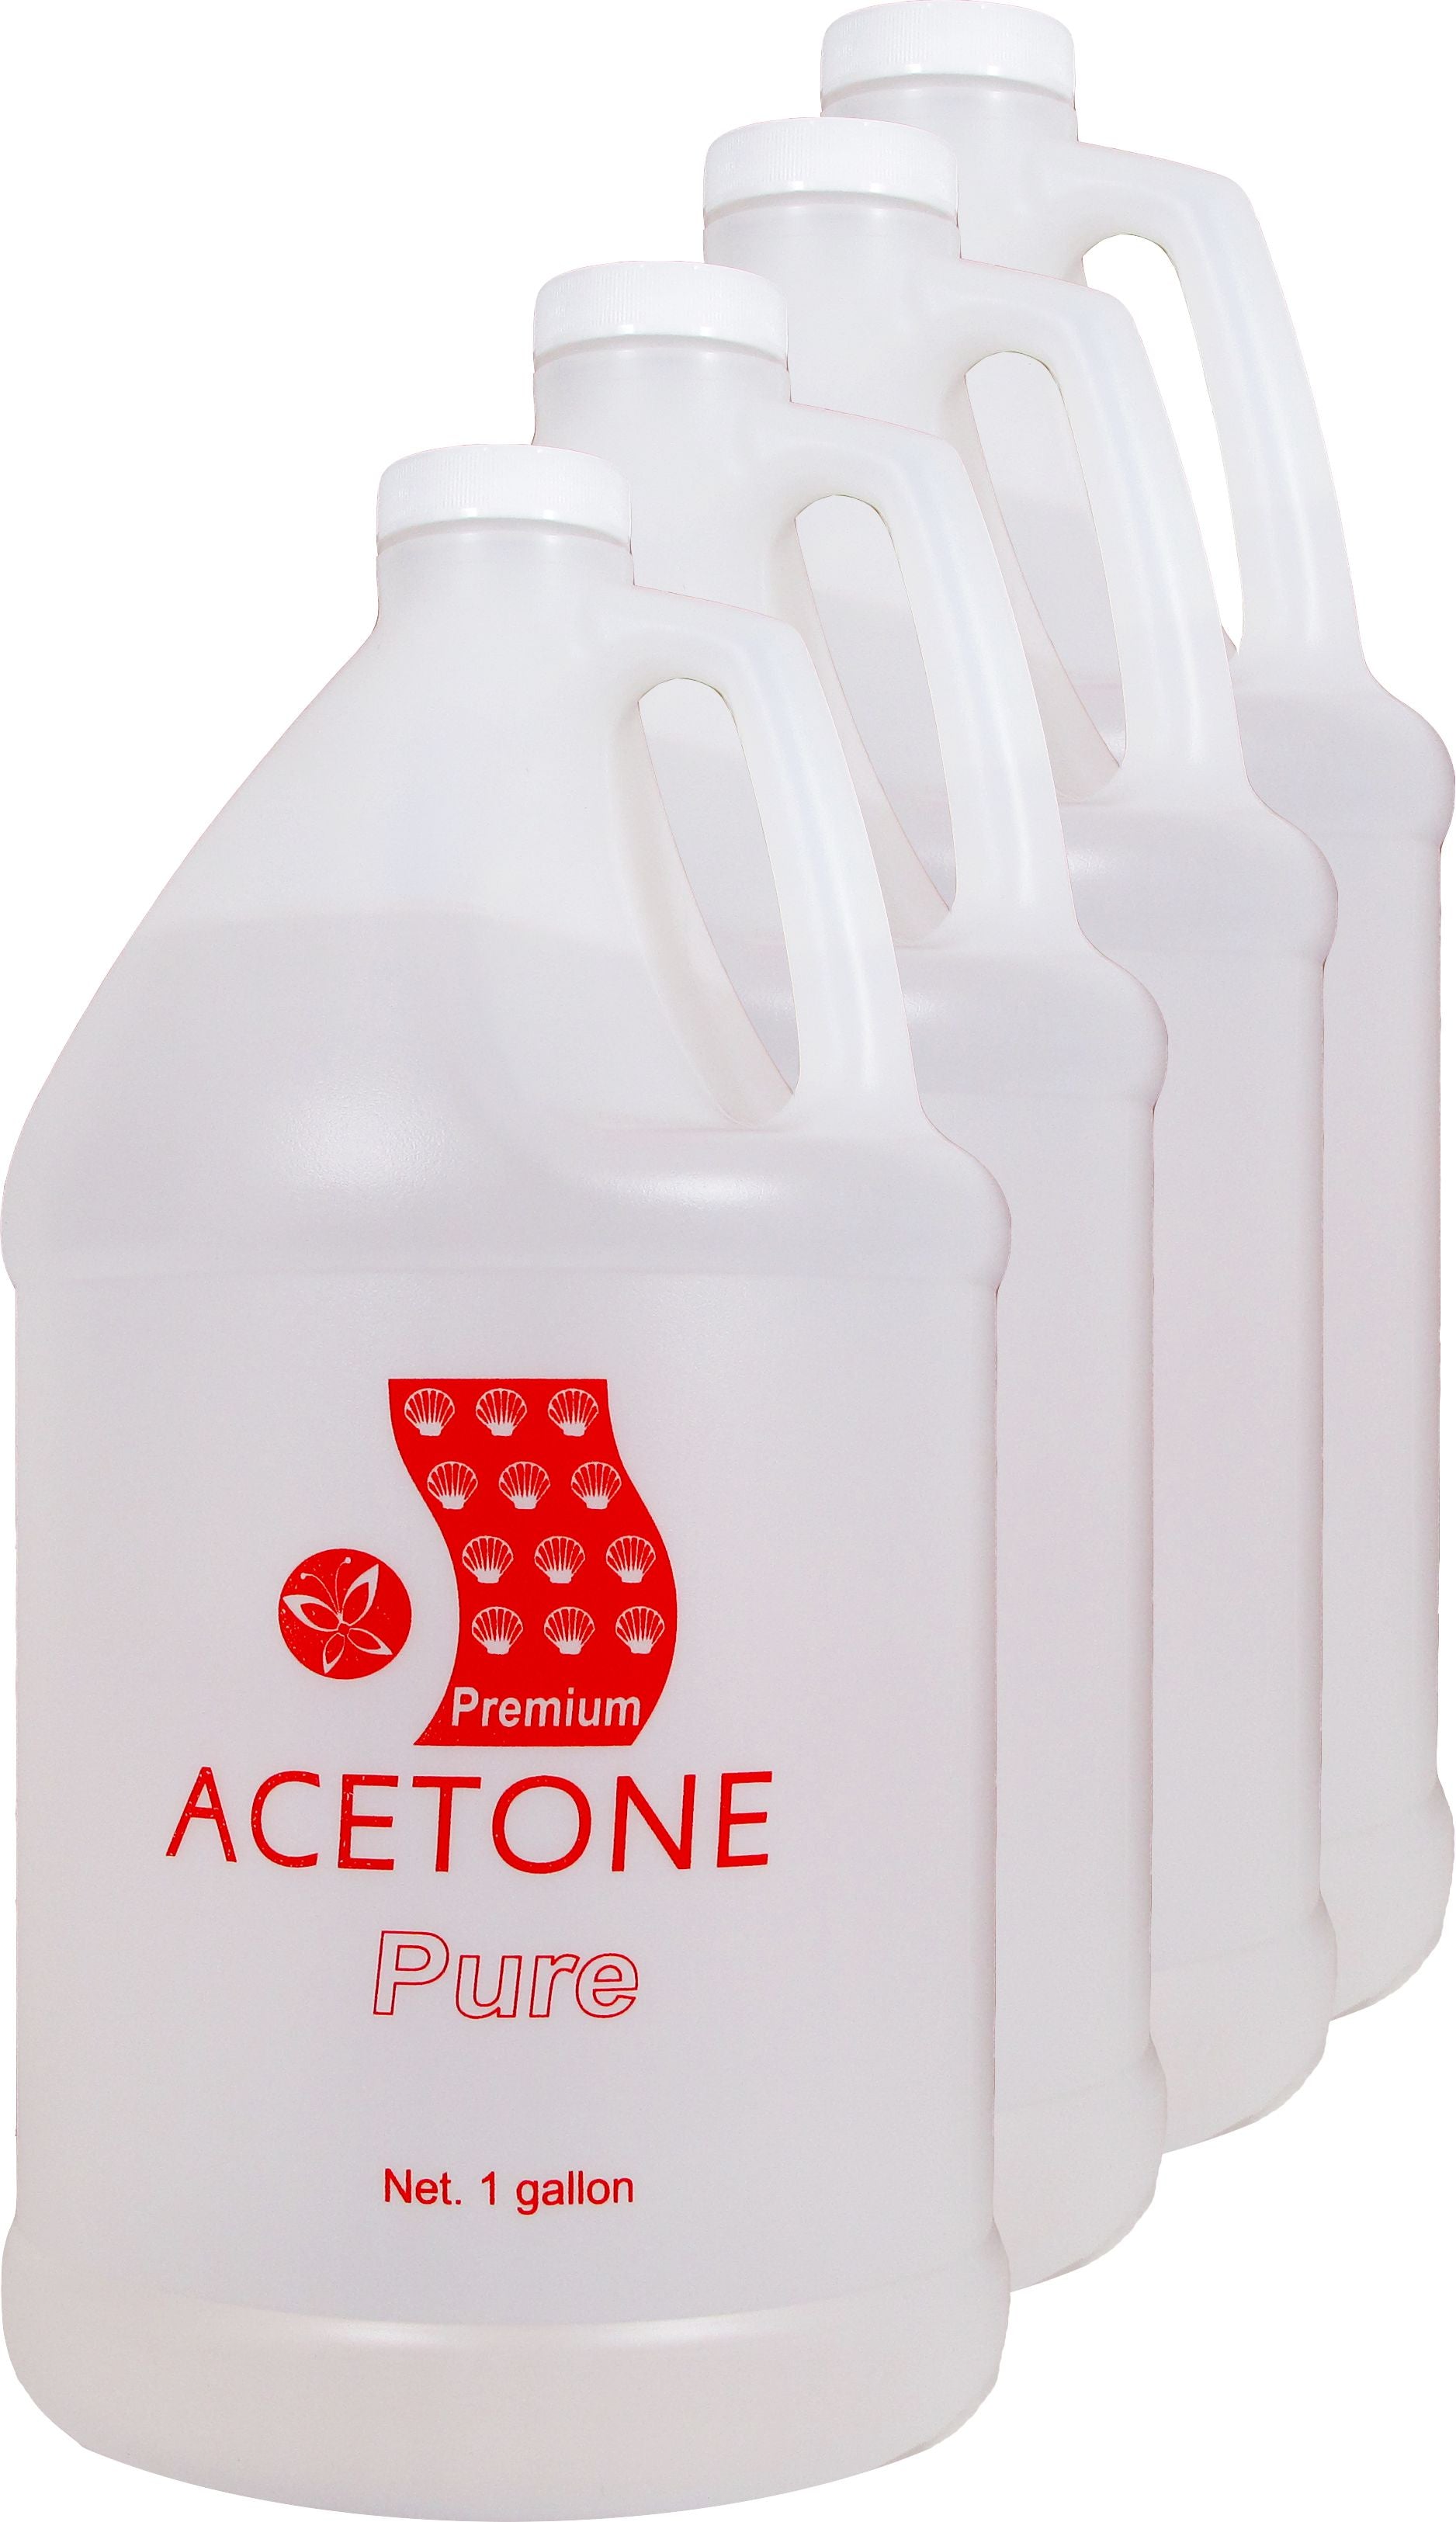 Acetone Nail Polish Remover 100% Pure Acetone La Palm 1 Gallon